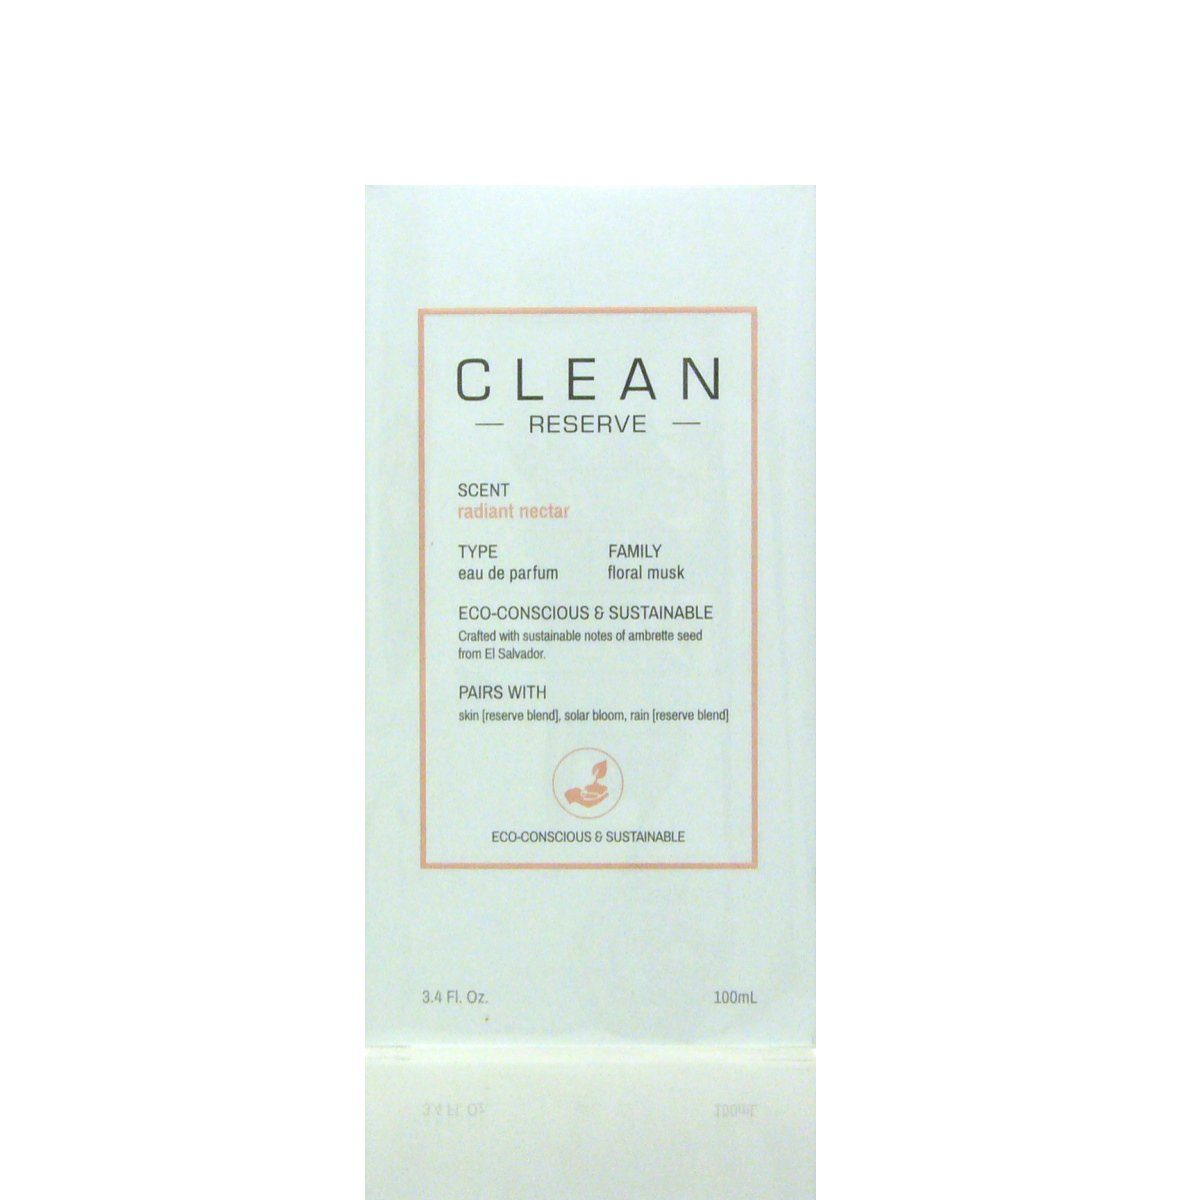 Parfum de Clean Nectar Parfum Eau 100 de Reserve Eau ml CLEAN Radiant